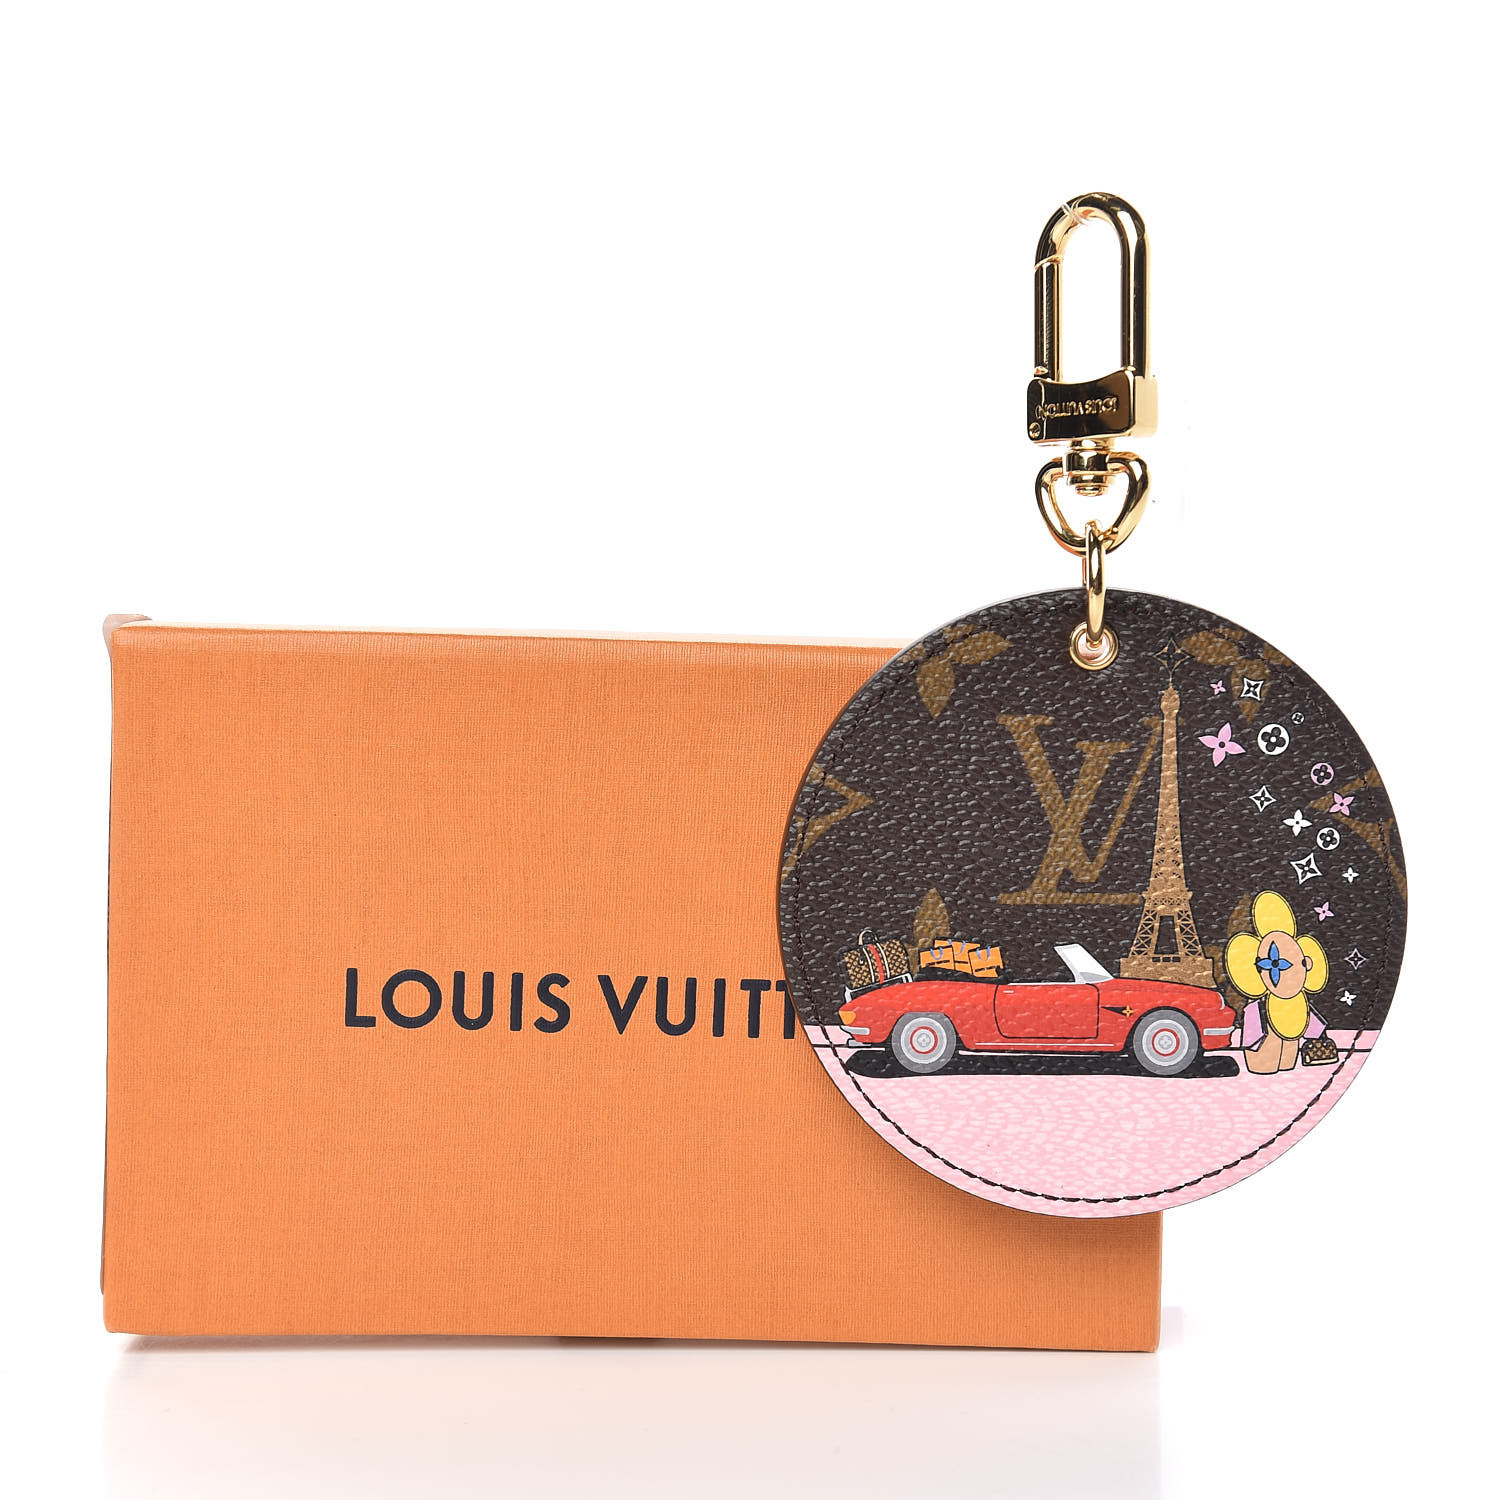 LOUIS VUITTON Monogram Vivienne Xmas Paris Bag Charm Key Holder 474007